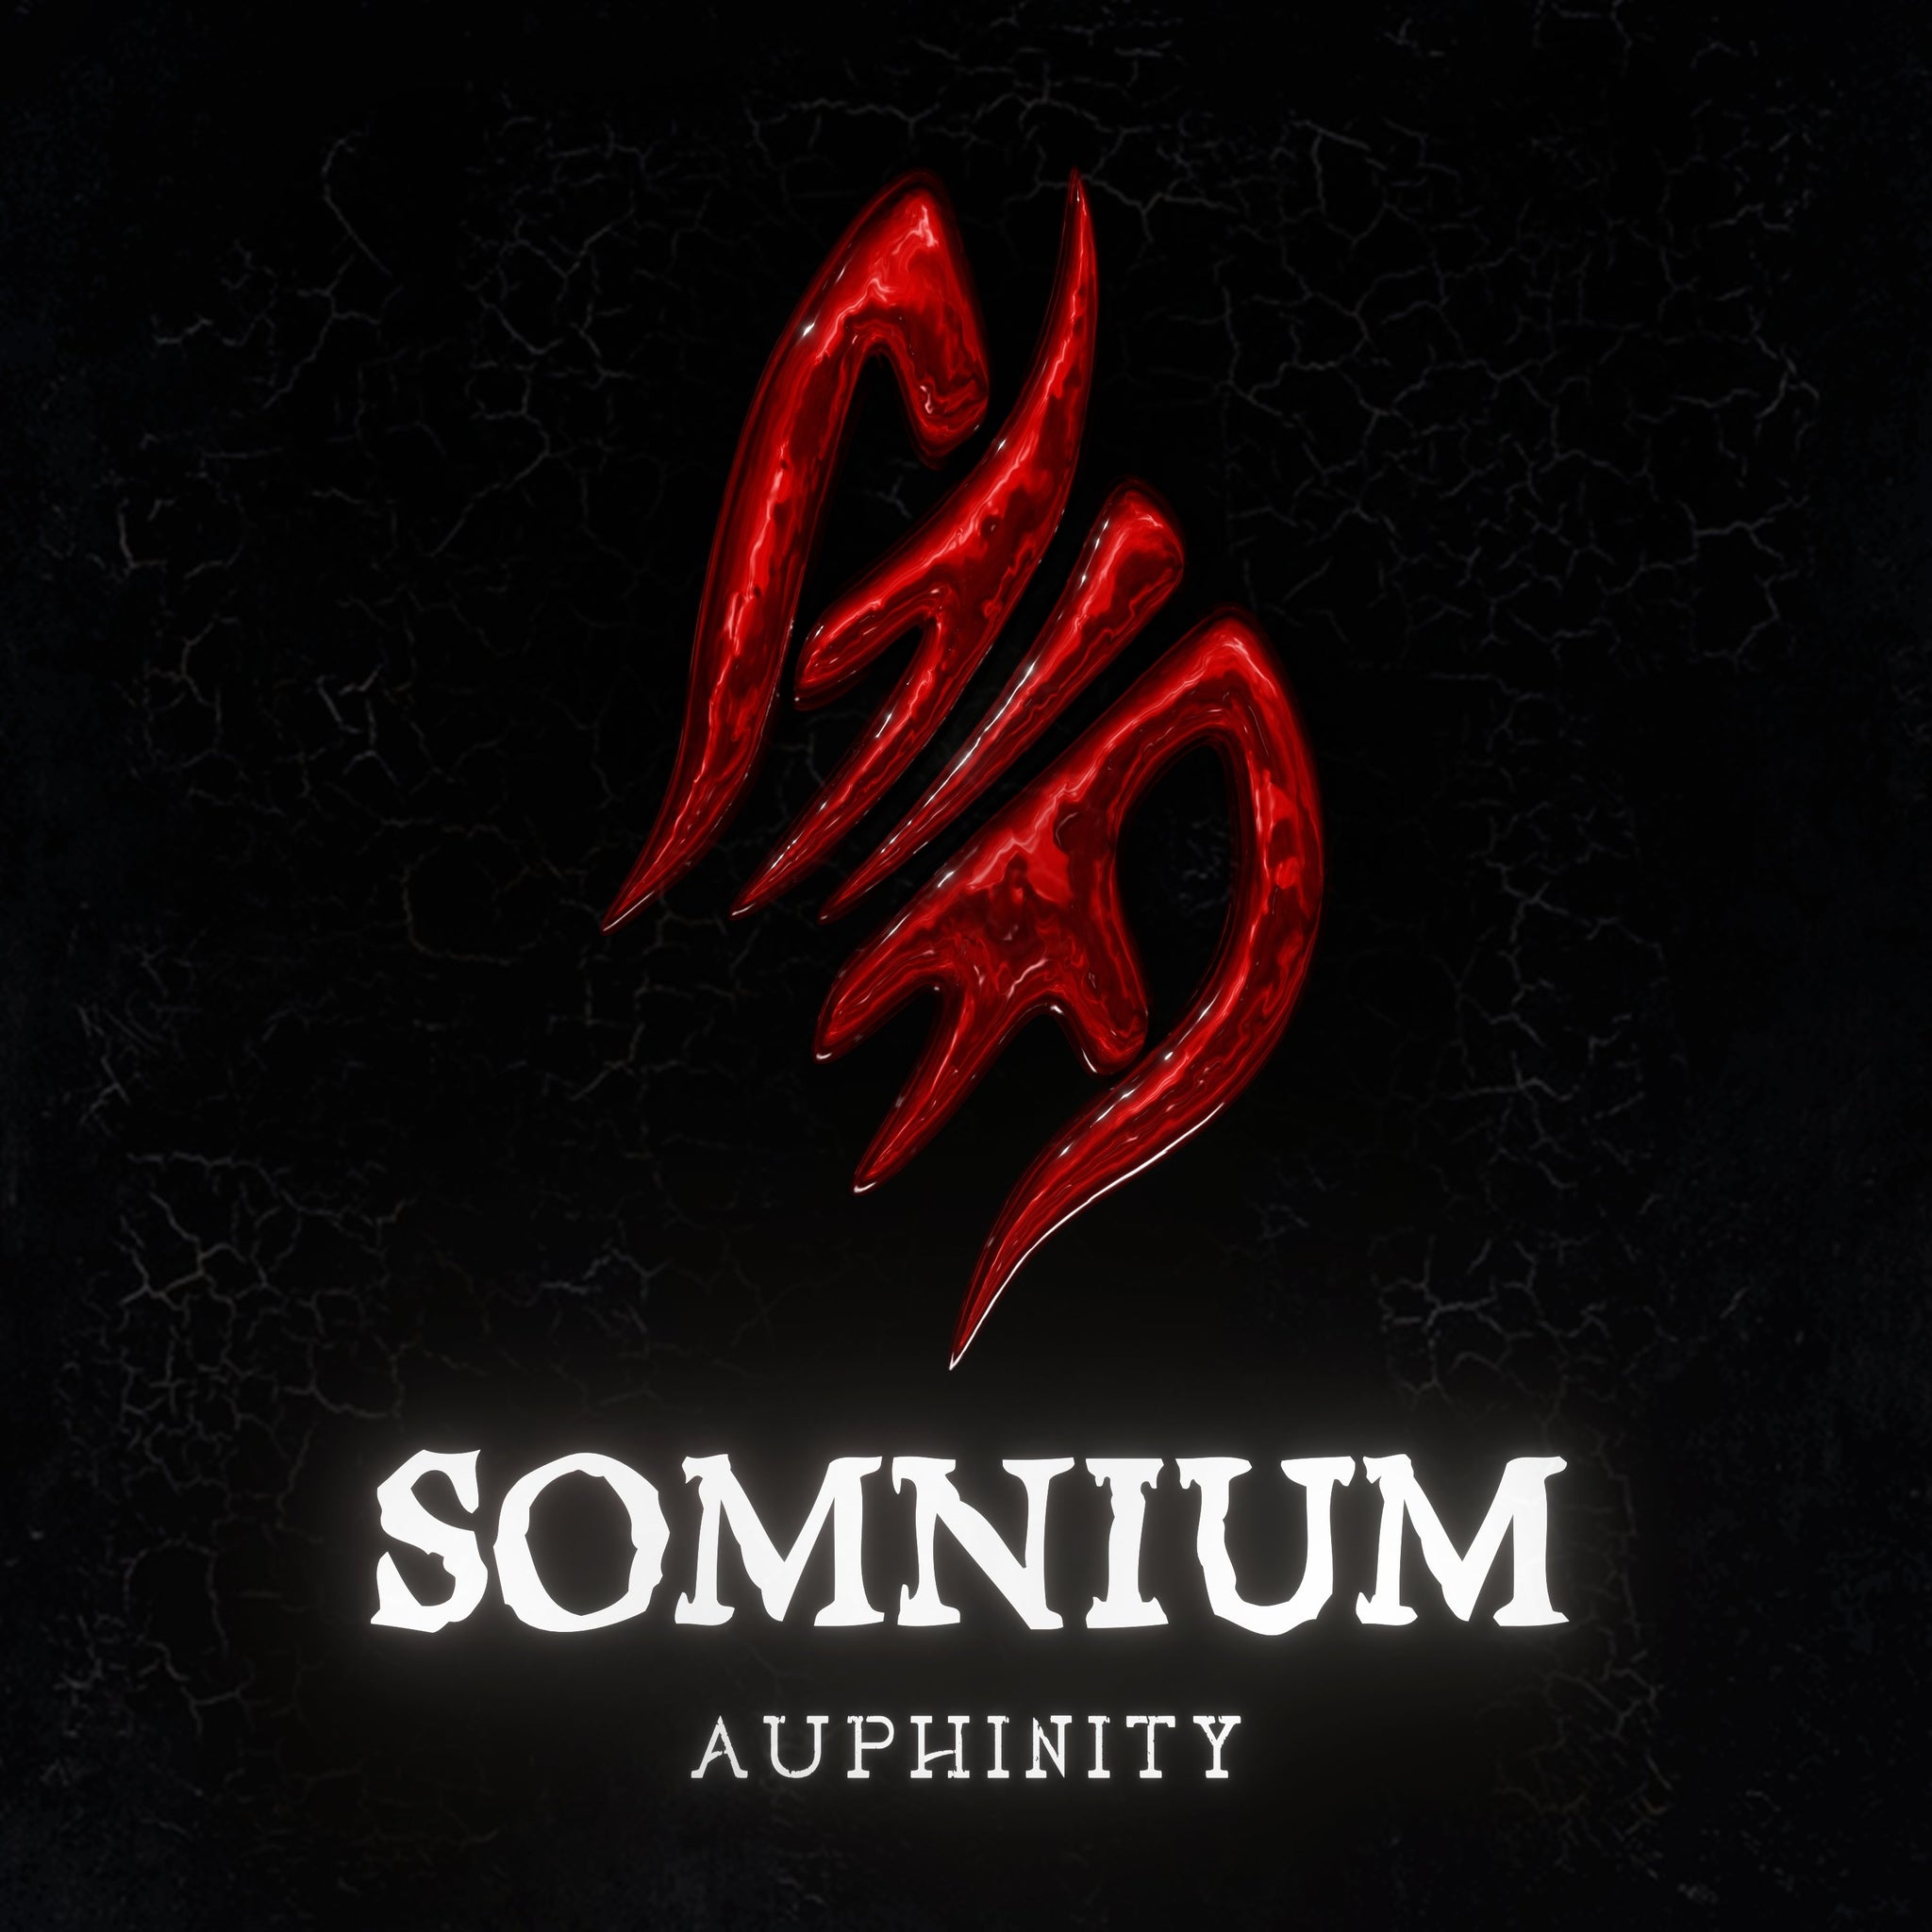 Somnium - Auphinity - Scraps Audio